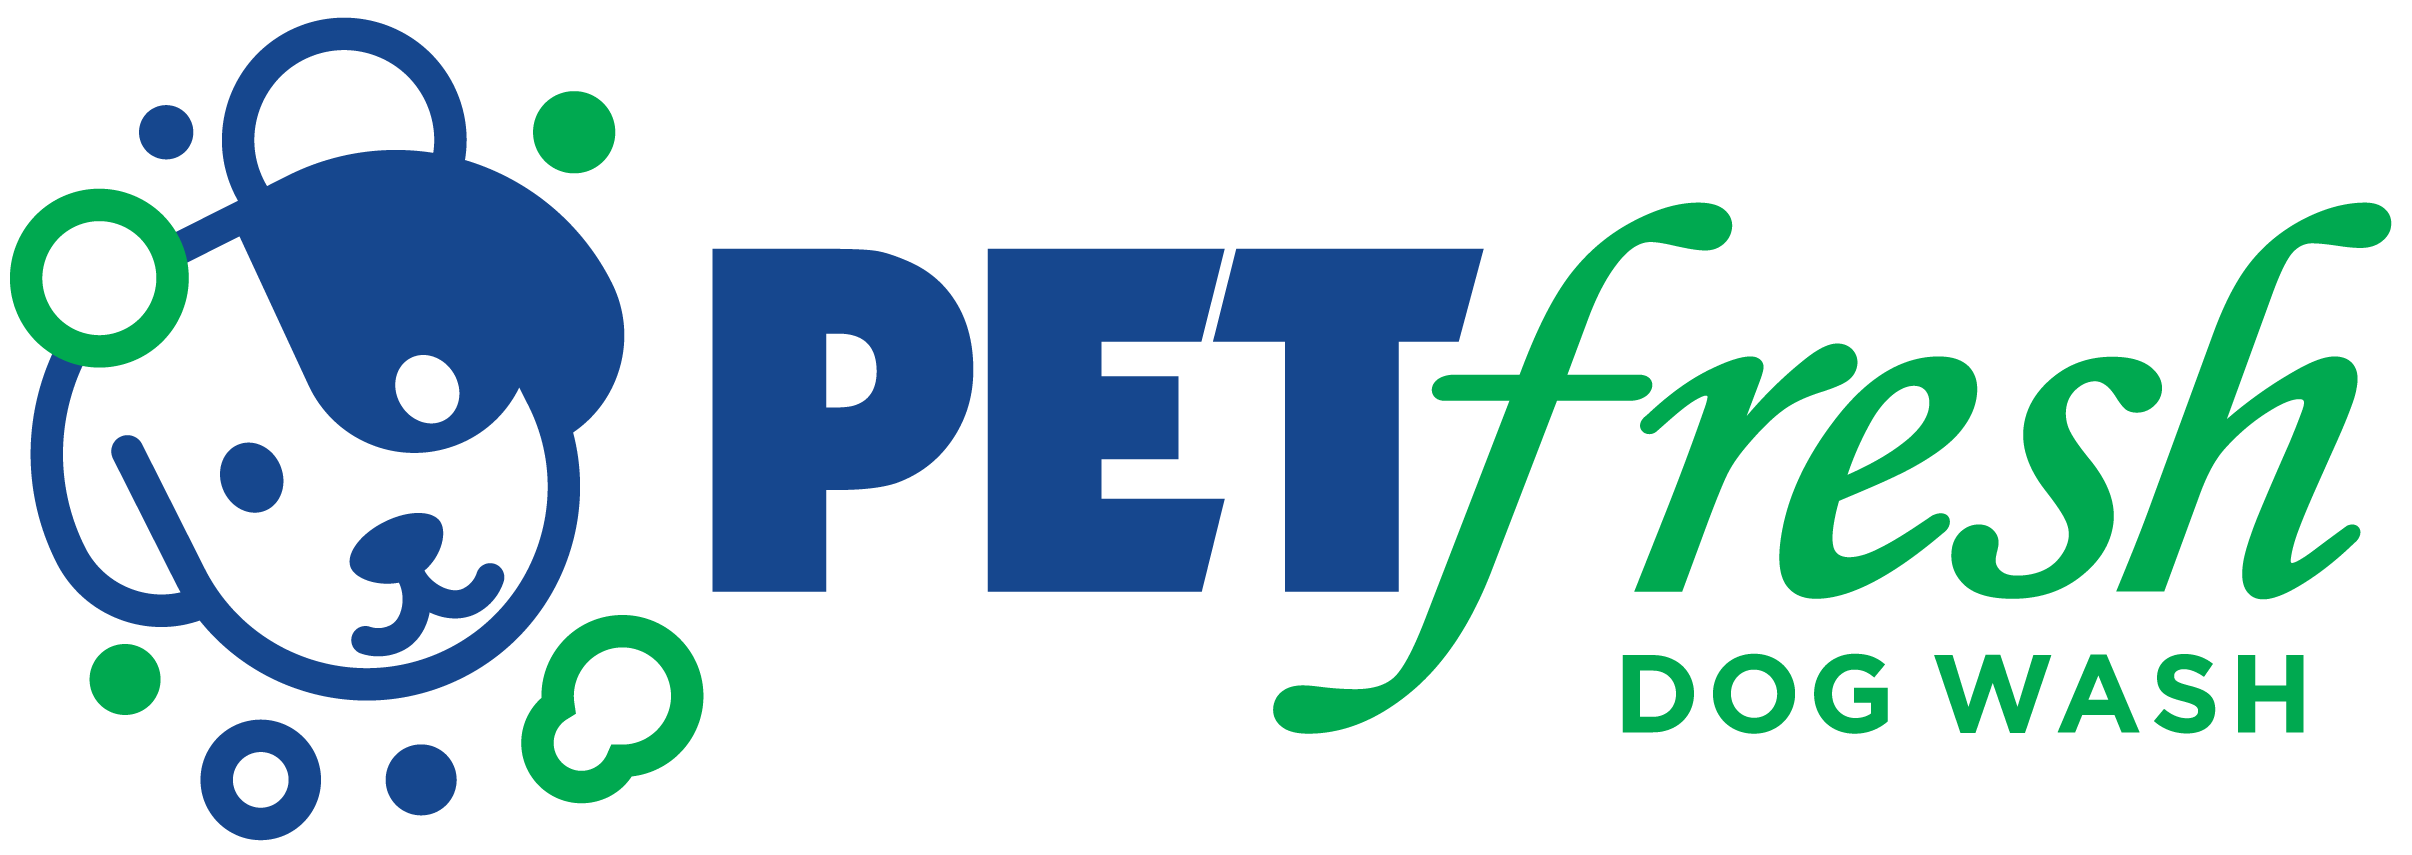 Pet Fresh Dog Wash logo